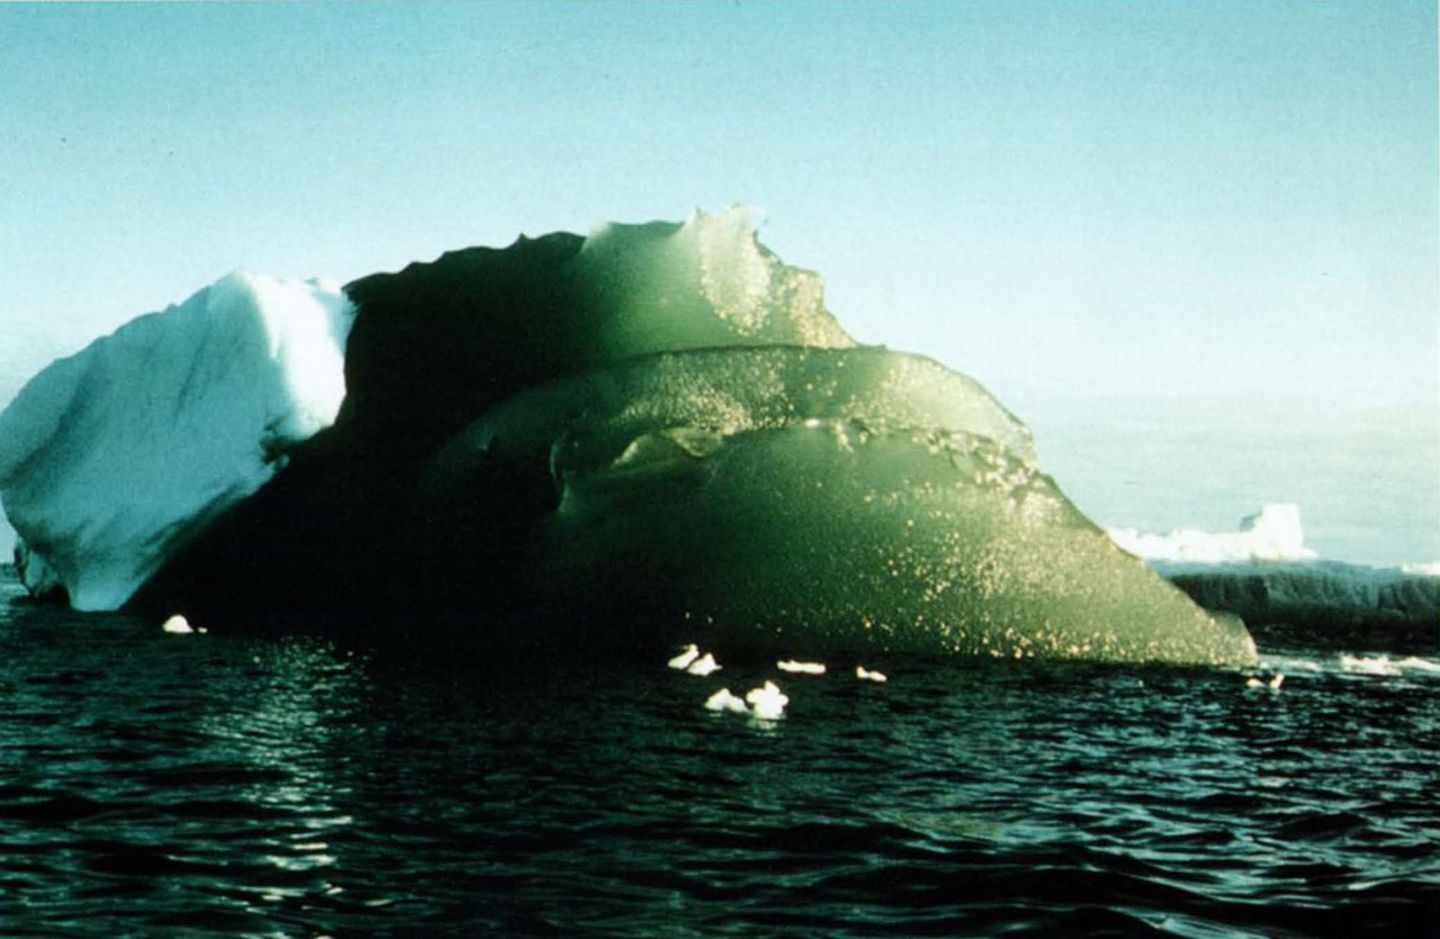 Grüne Eisscholle in Weddell Sea, Antarktis 16.02.1985